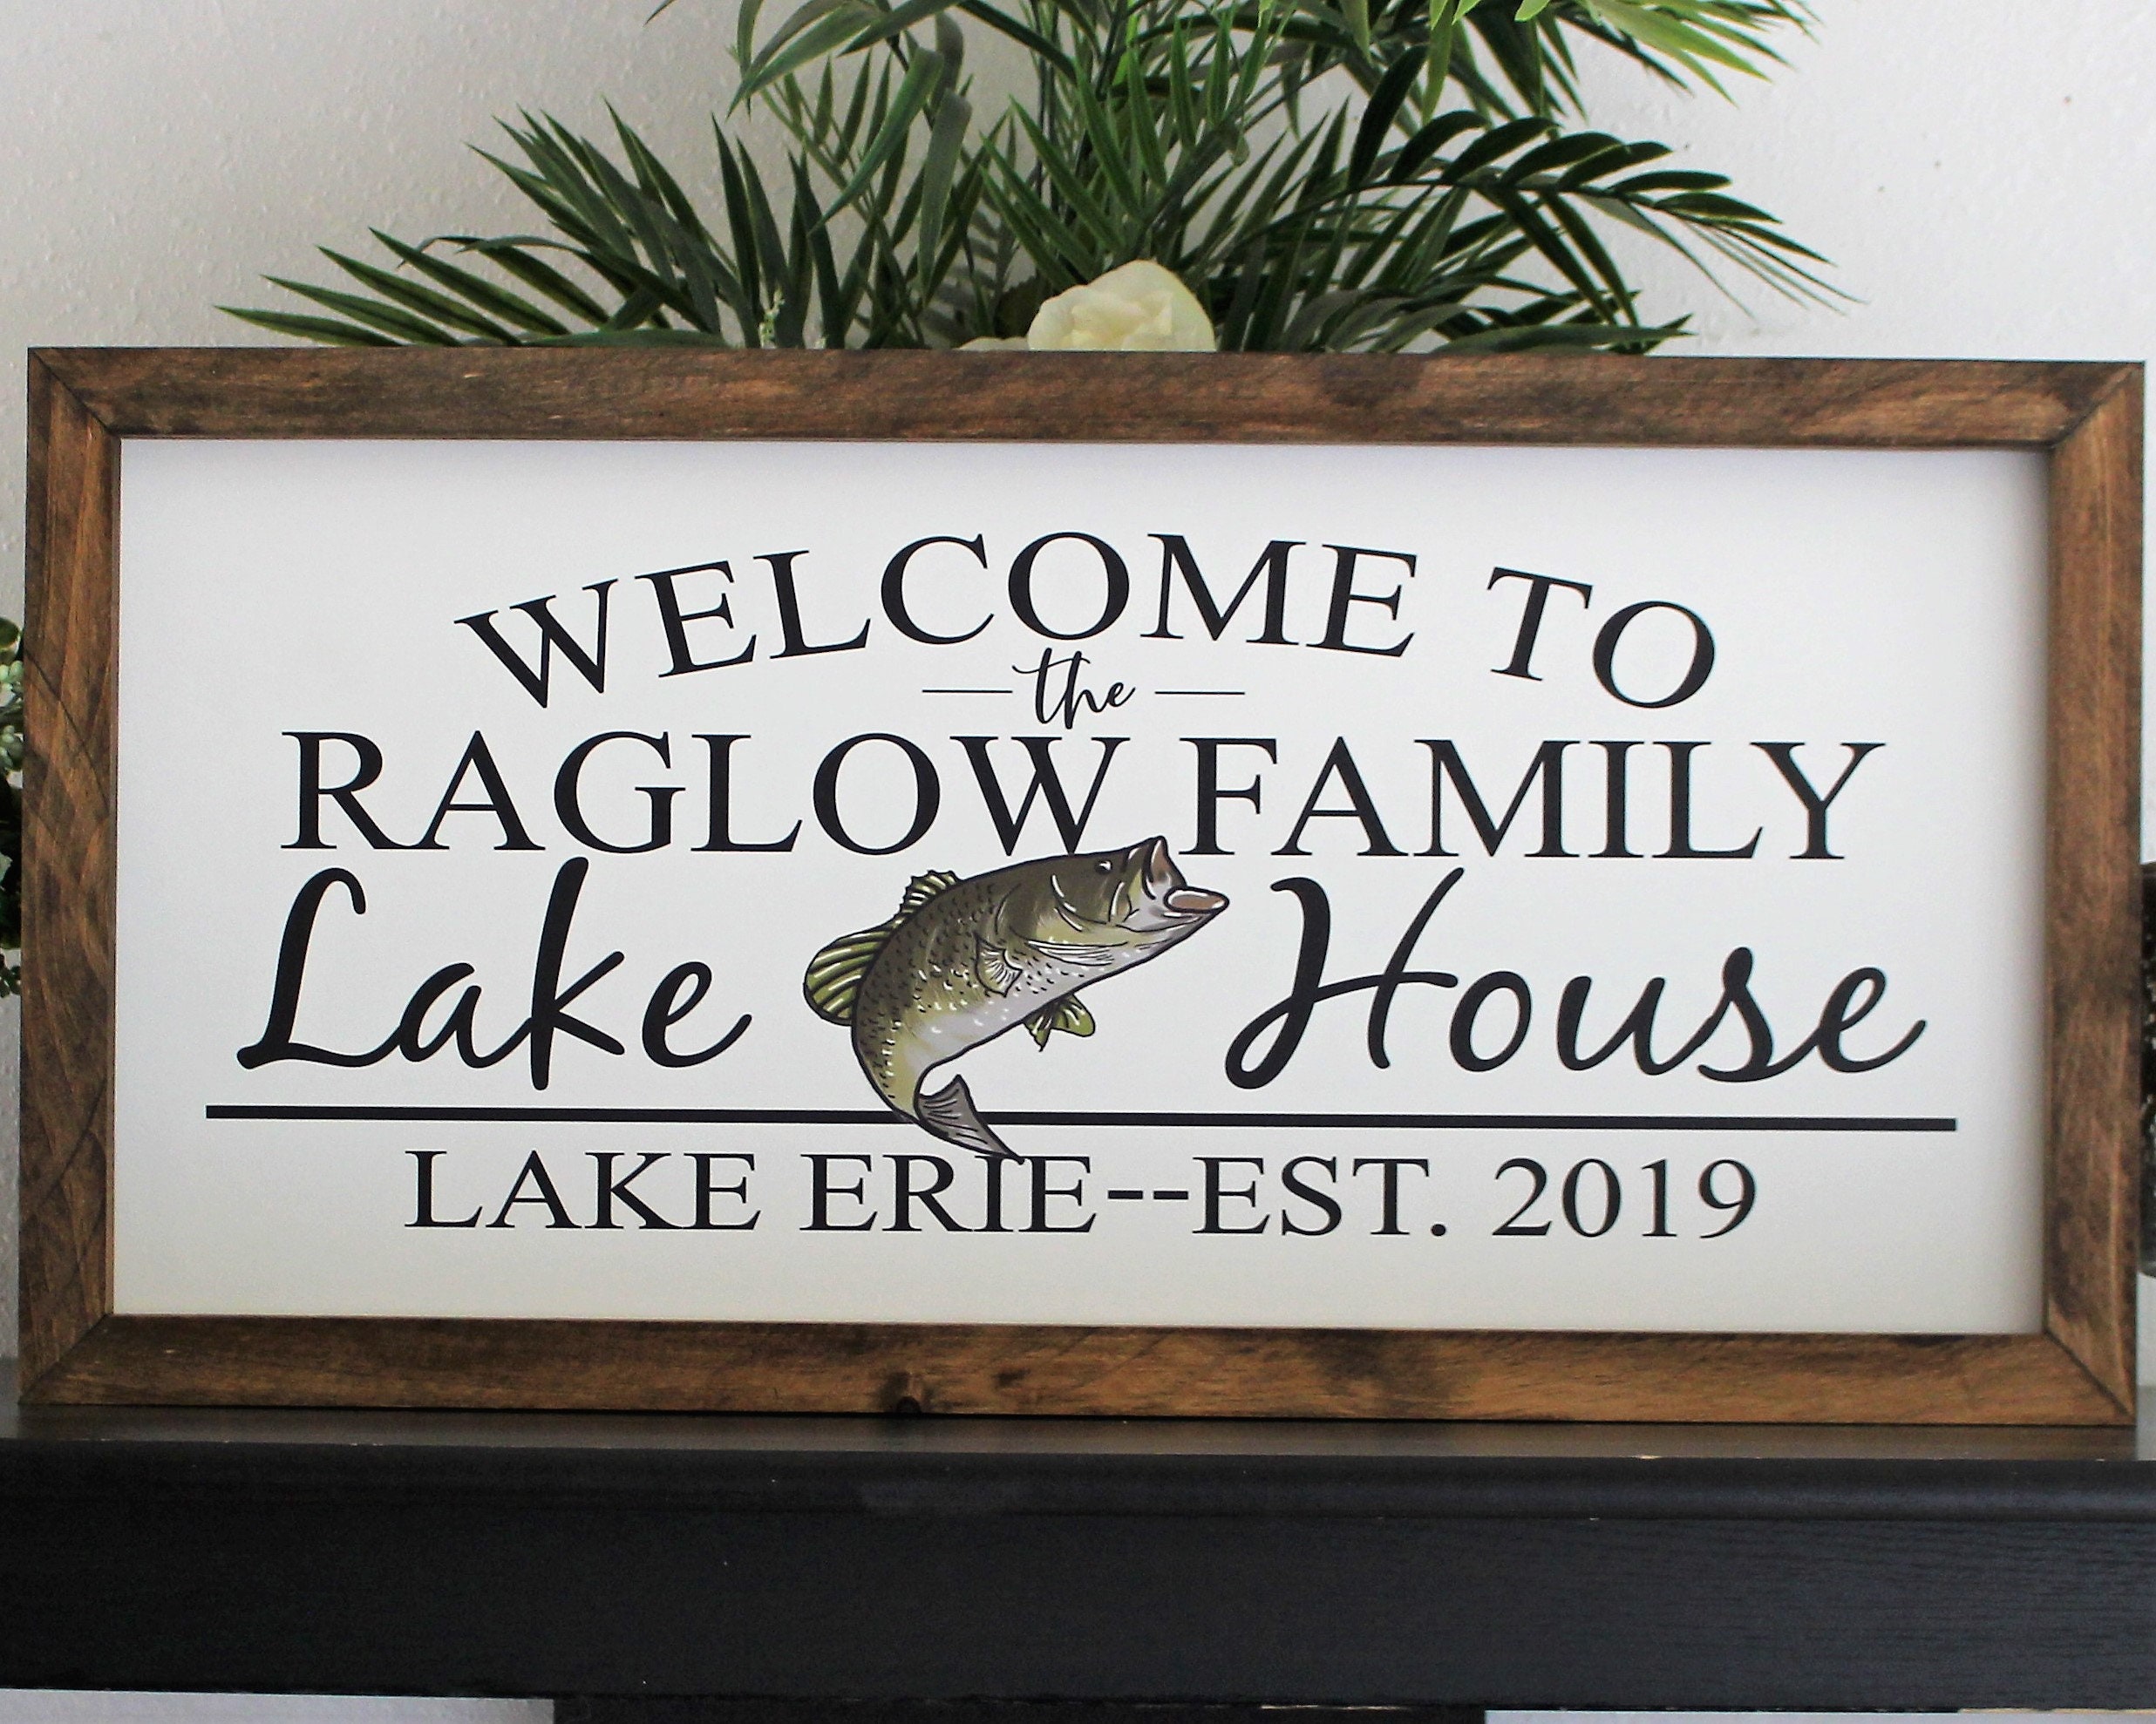 WELCOME to the LAKE signorange signhand painted signretro beach signcottage decorlake house signwooden signlake sign